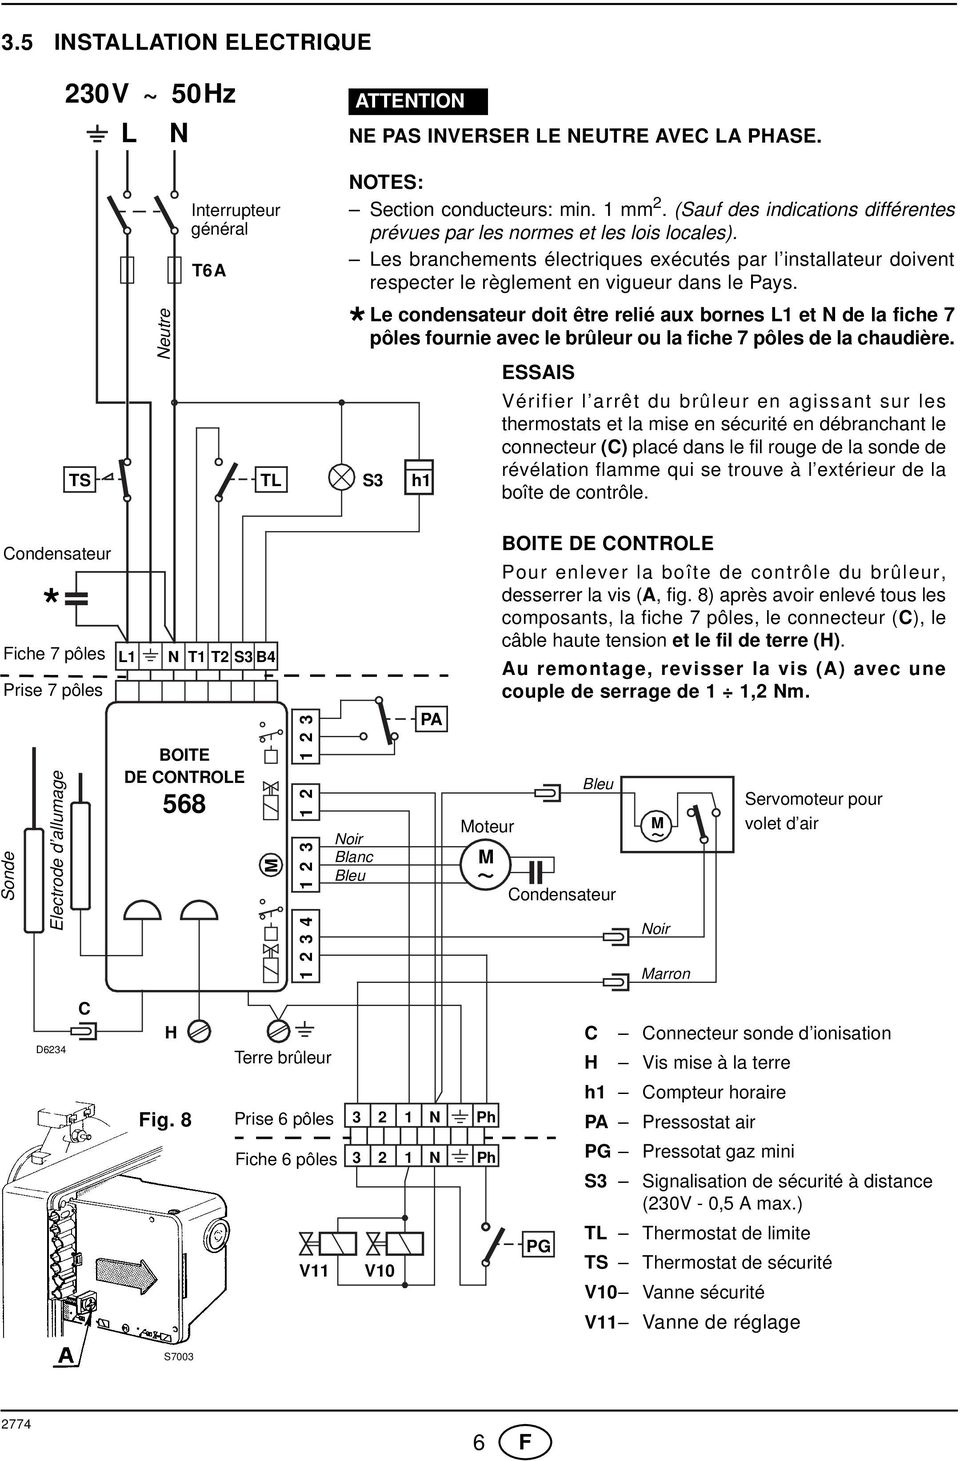 Le condensateur doit être relié aux bornes L1 et N de la fiche 7 * pôles fournie avec le brûleur ou la fiche 7 pôles de la chaudière.